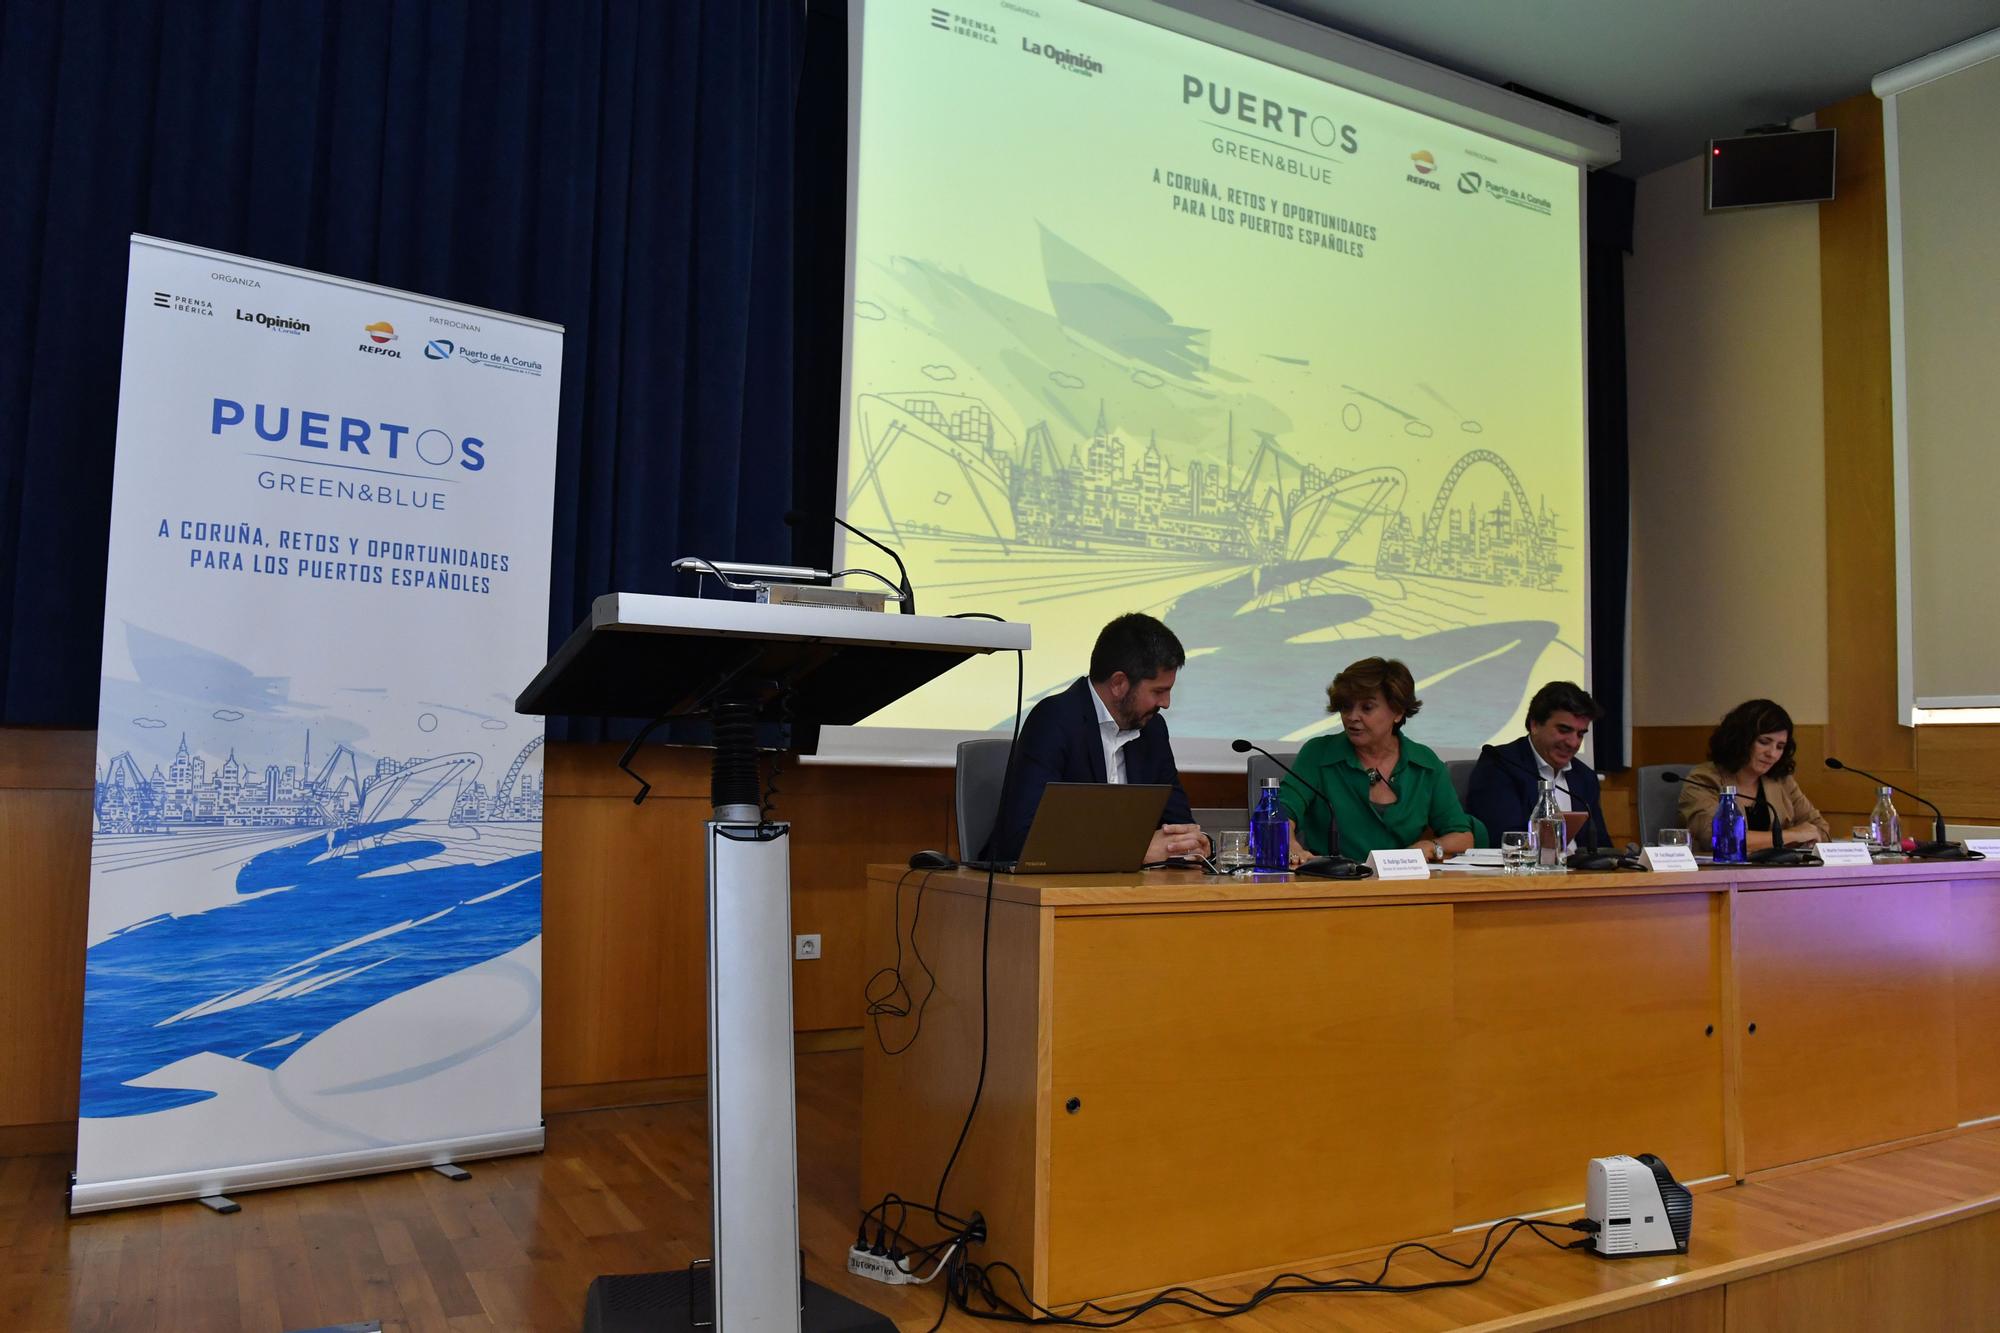 Foro Puertos Green&Blue: A Coruña, retos y oportunidades para los puertos españoles